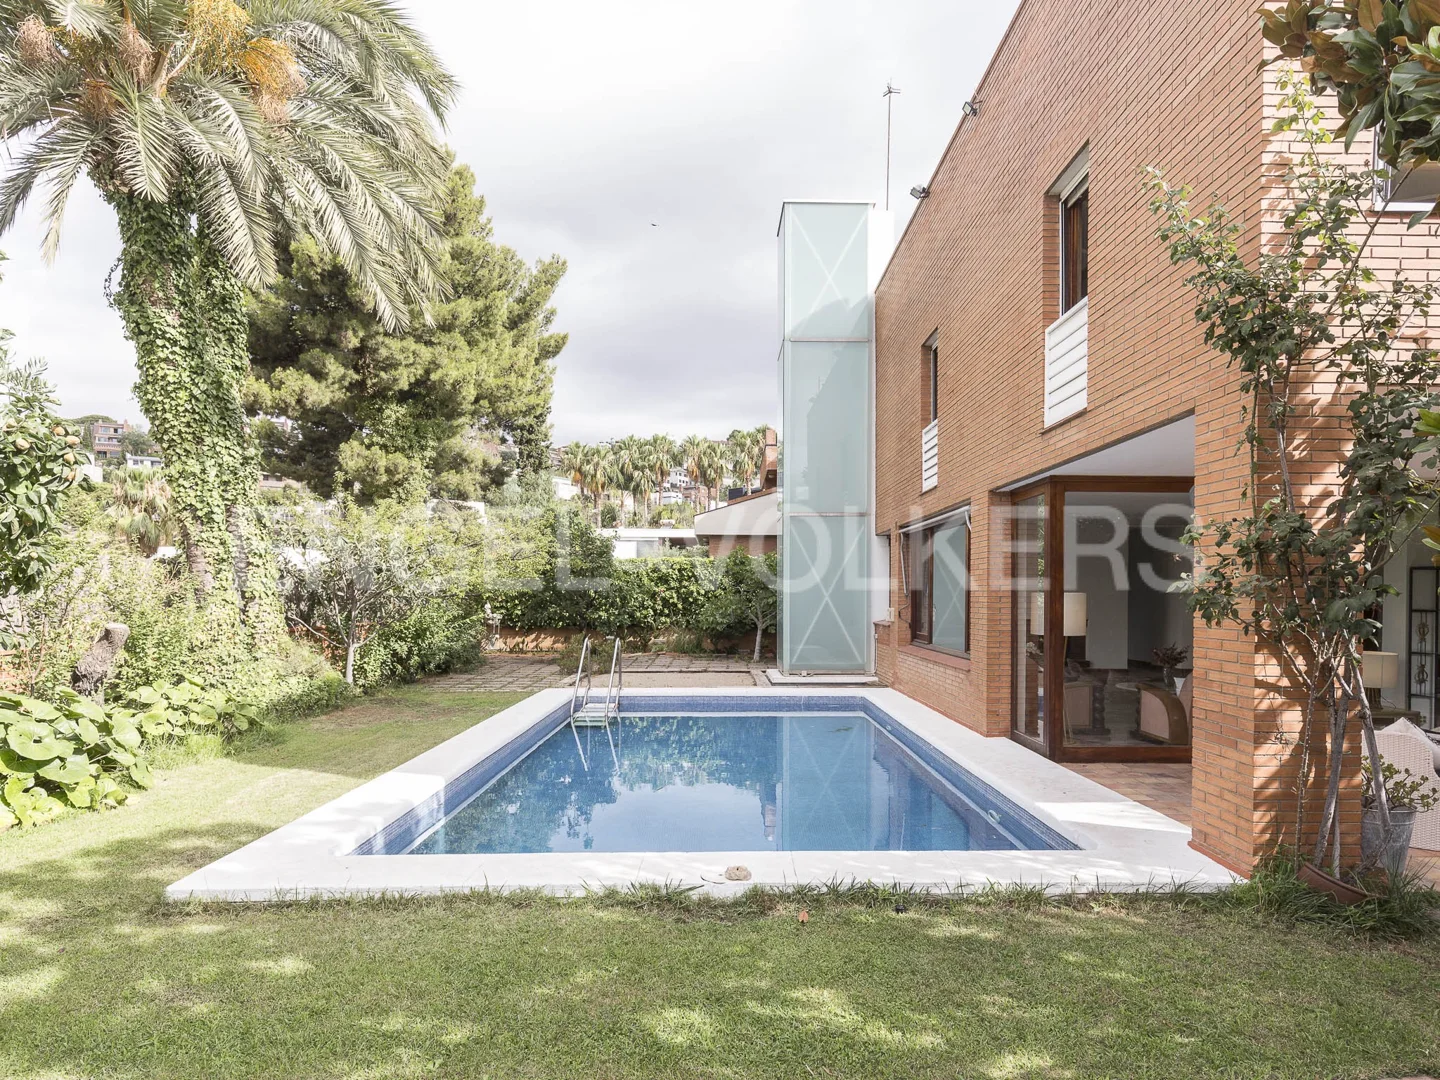 Exclusiva casa amb piscina a Ciutat Diagonal